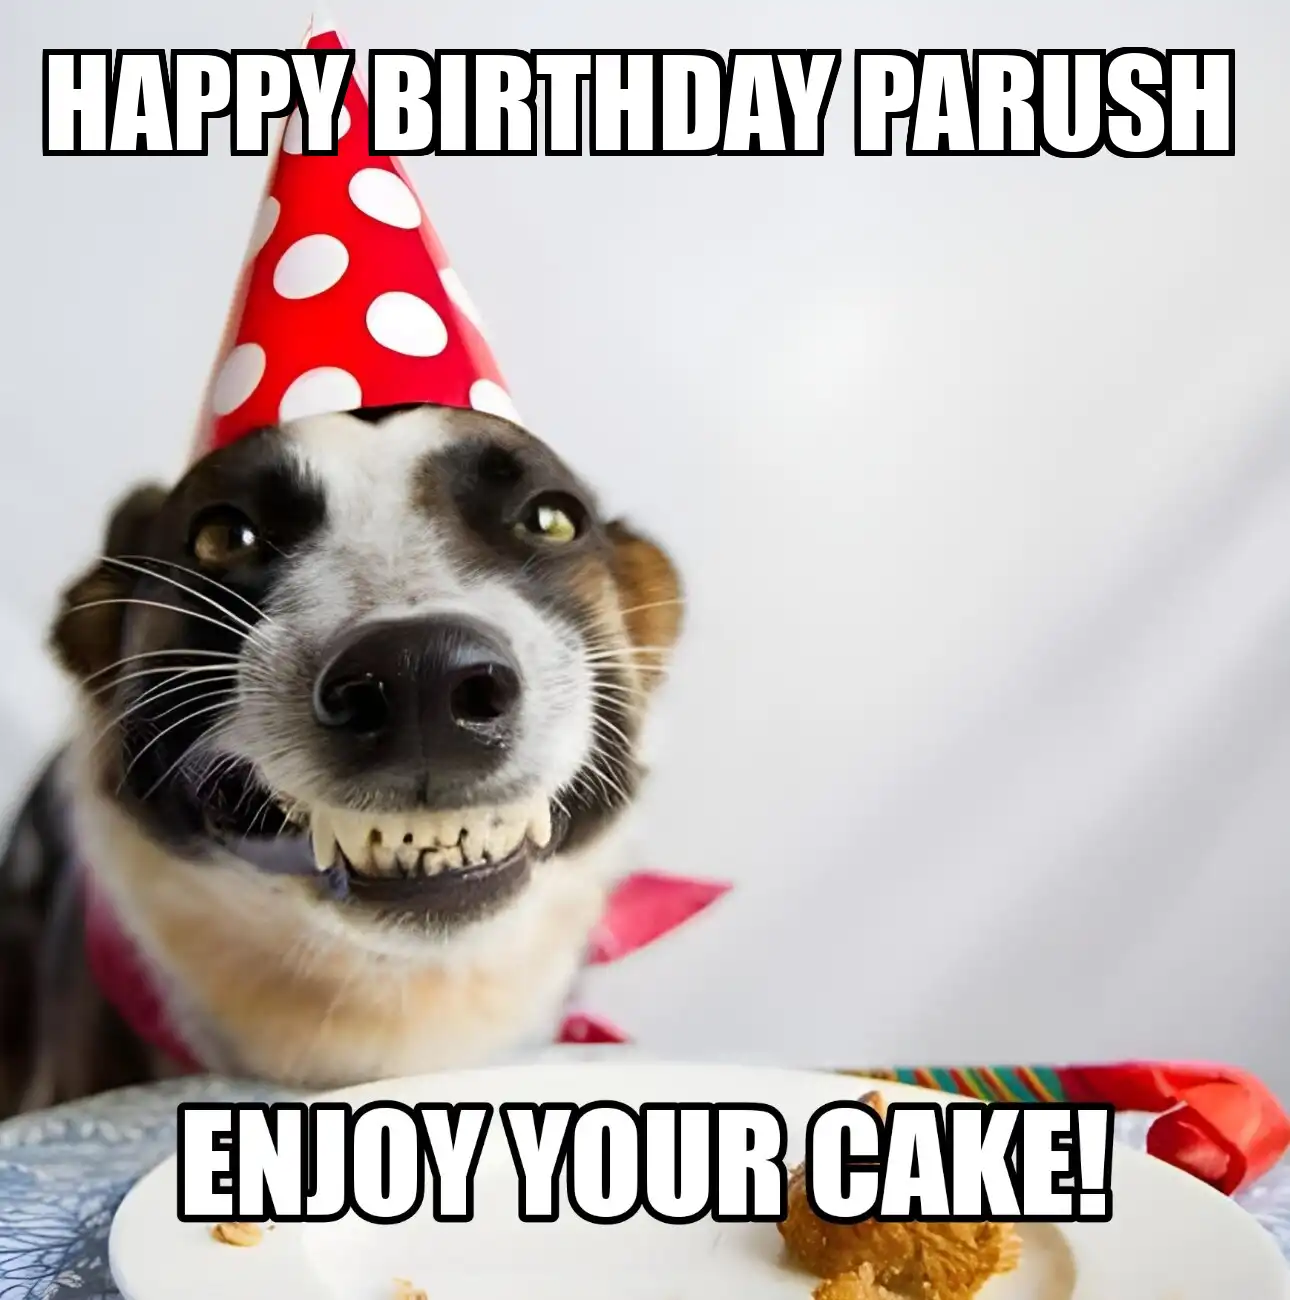 Happy Birthday Parush Enjoy Your Cake Dog Meme